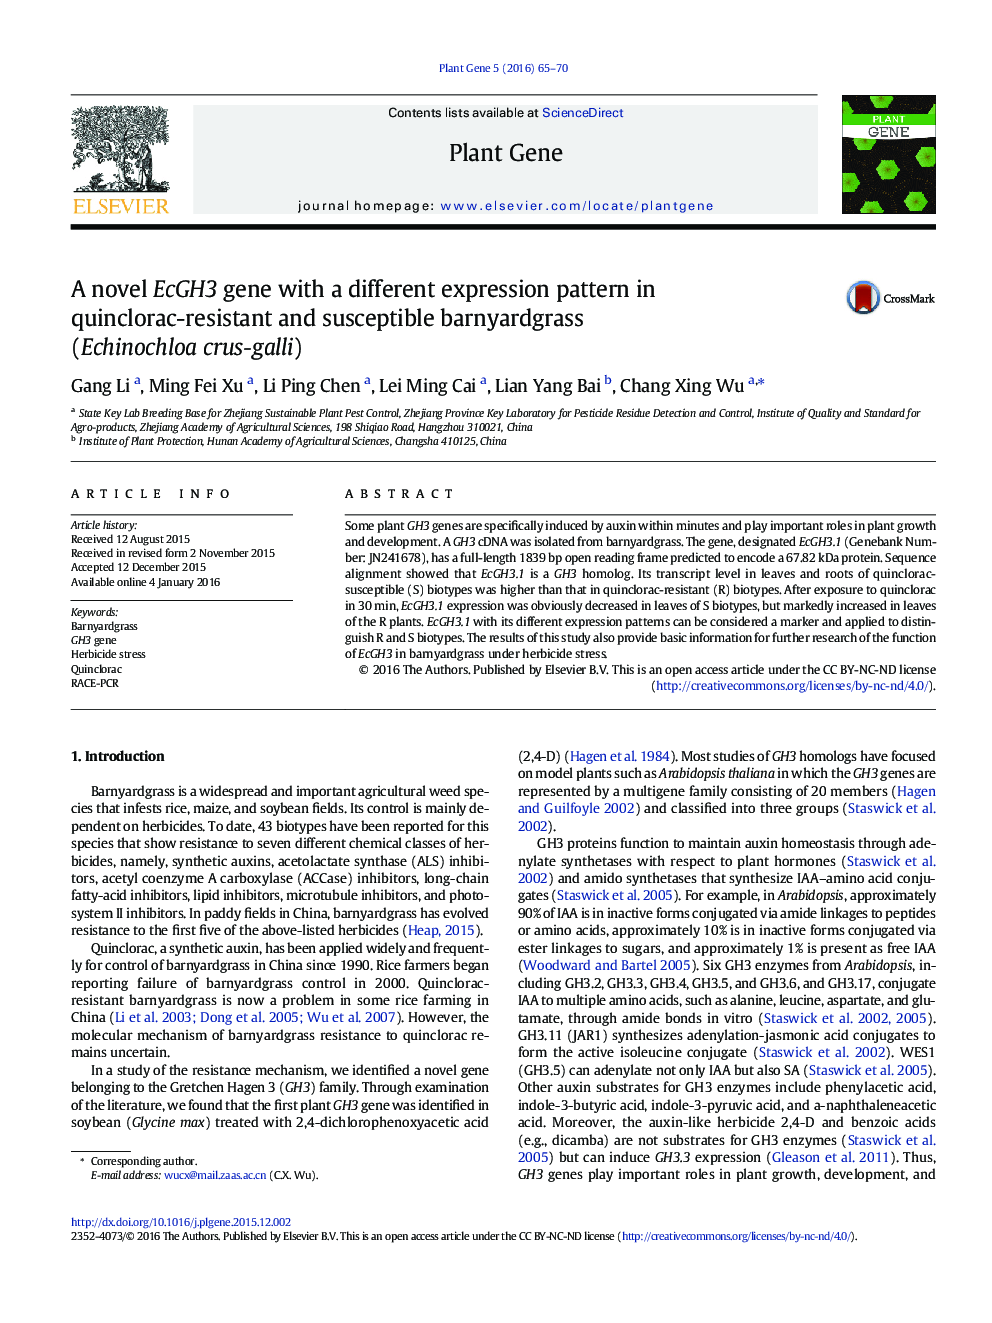 یک ژن EcGH3 جدید با یک الگوی بیان متفاوت در موش صحرایی مقاوم به کوکولارک و حساس (Echinochloa crus-galli)